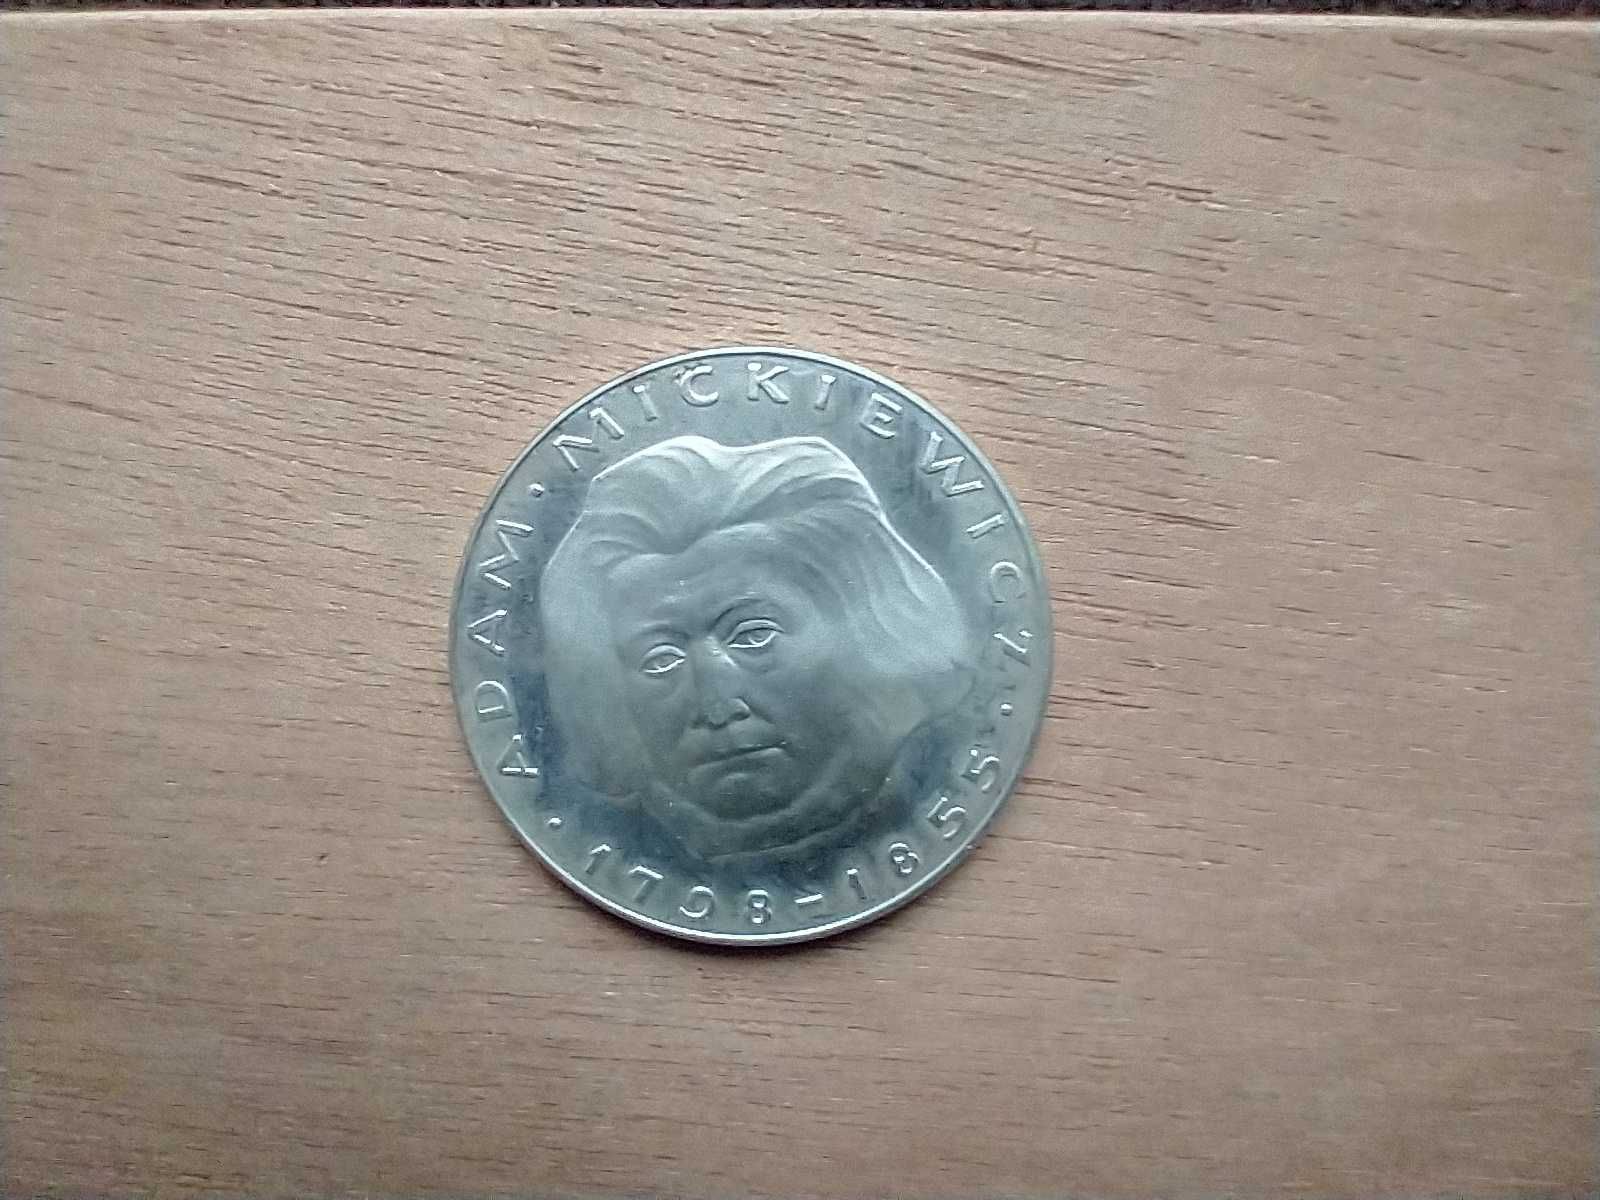 Moneta 100 zł Mickiewicz